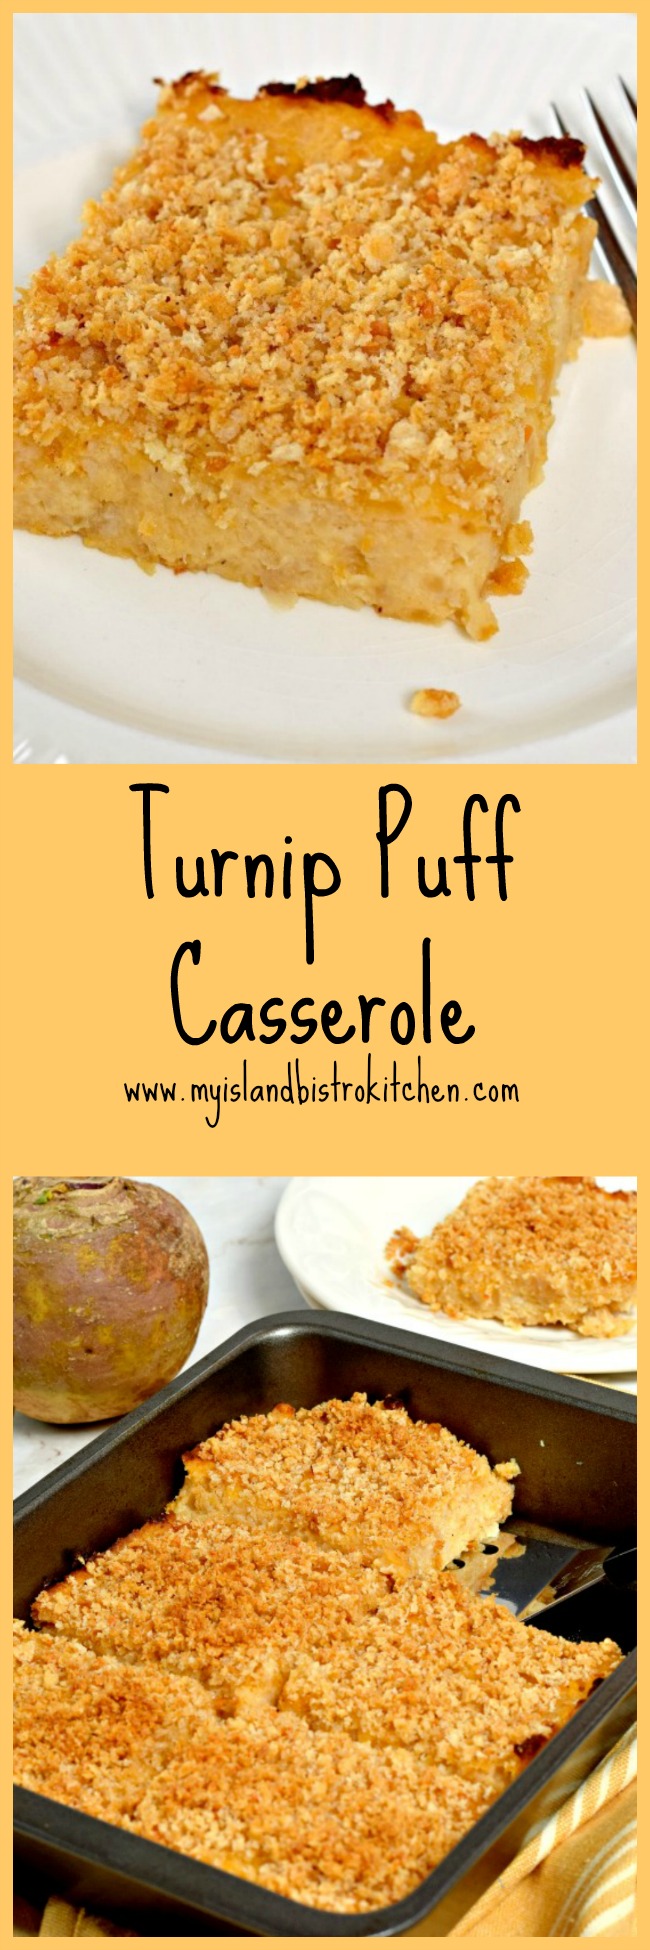 Turnip Puff Casserole